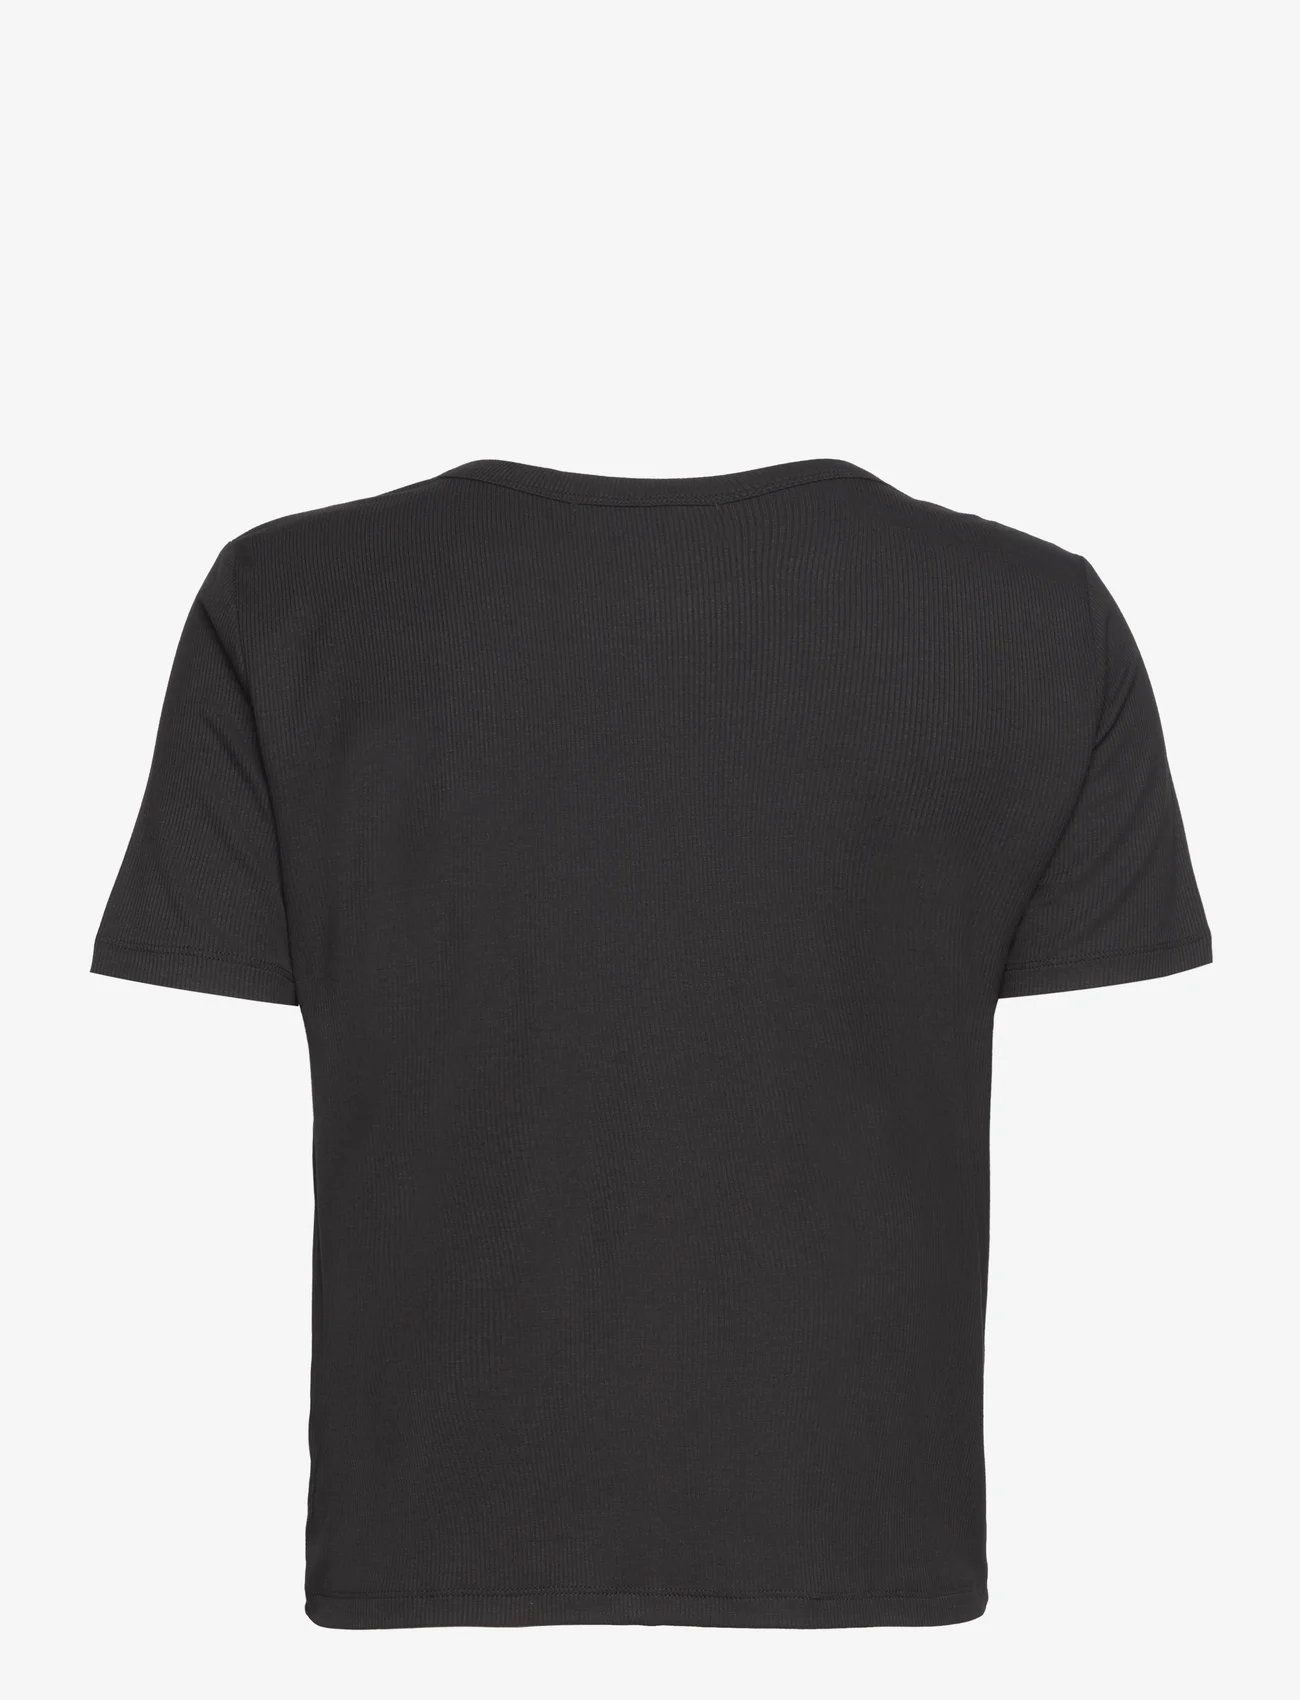 Sofie Schnoor - T-Shirt - laveste priser - black - 1